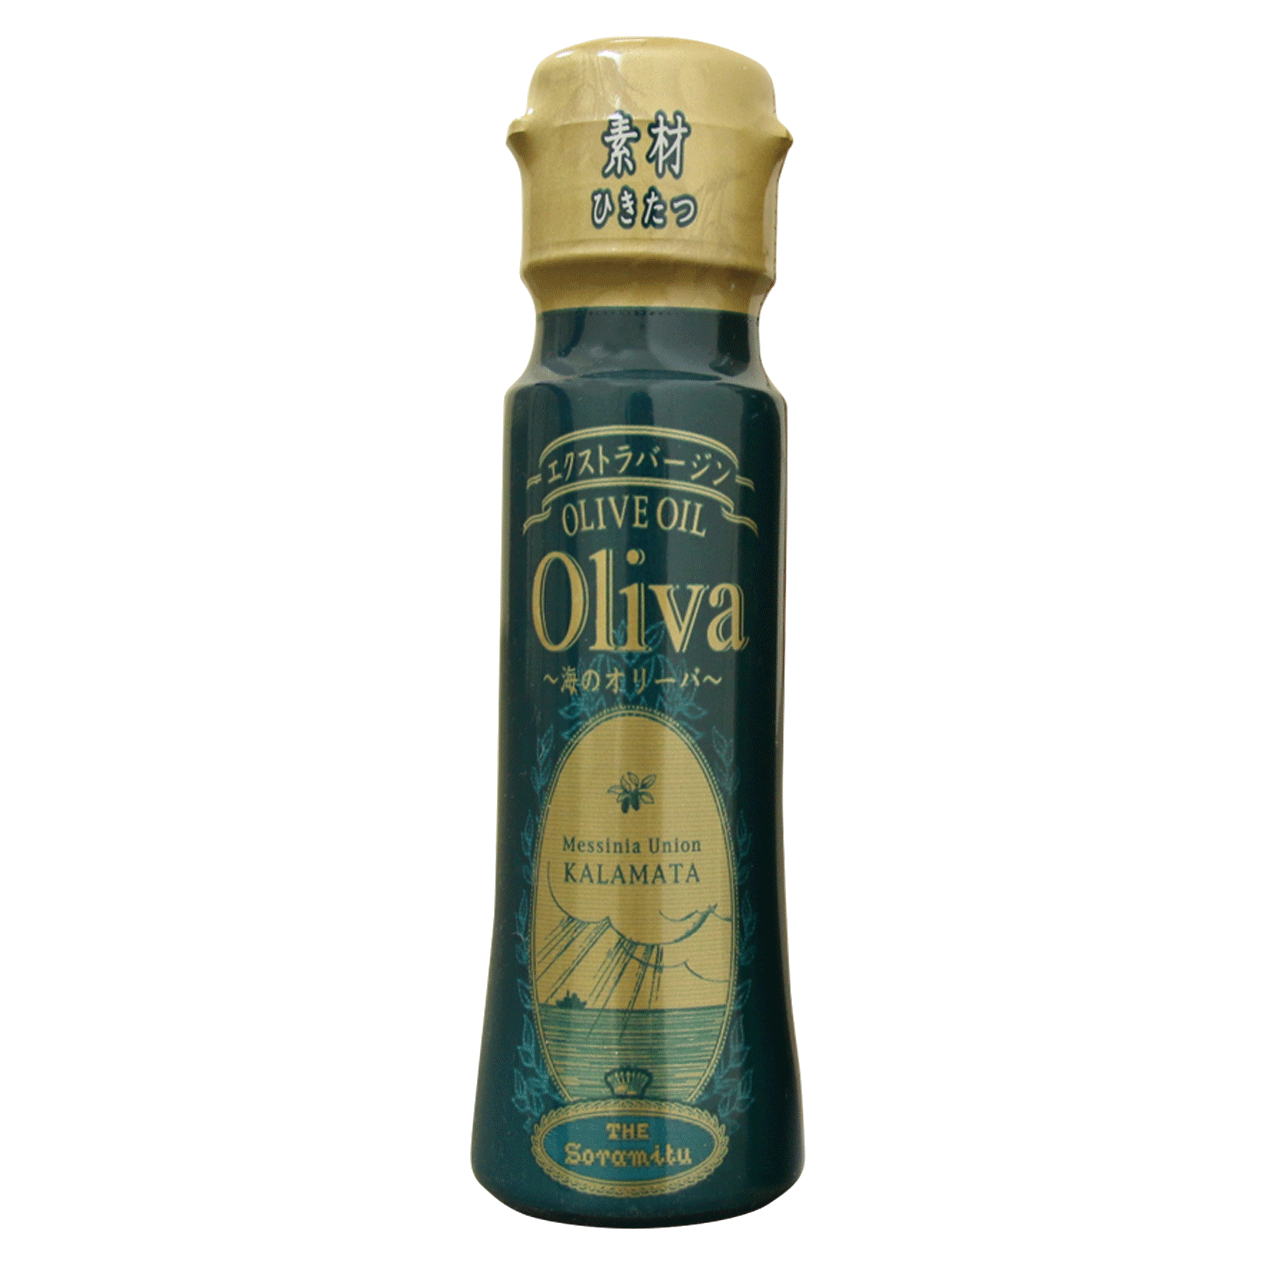 そらみつ ギリシャ産オリーブの実 グリーンオリーブ 種ぬき 212瓶 90g×12個 オンライン取寄